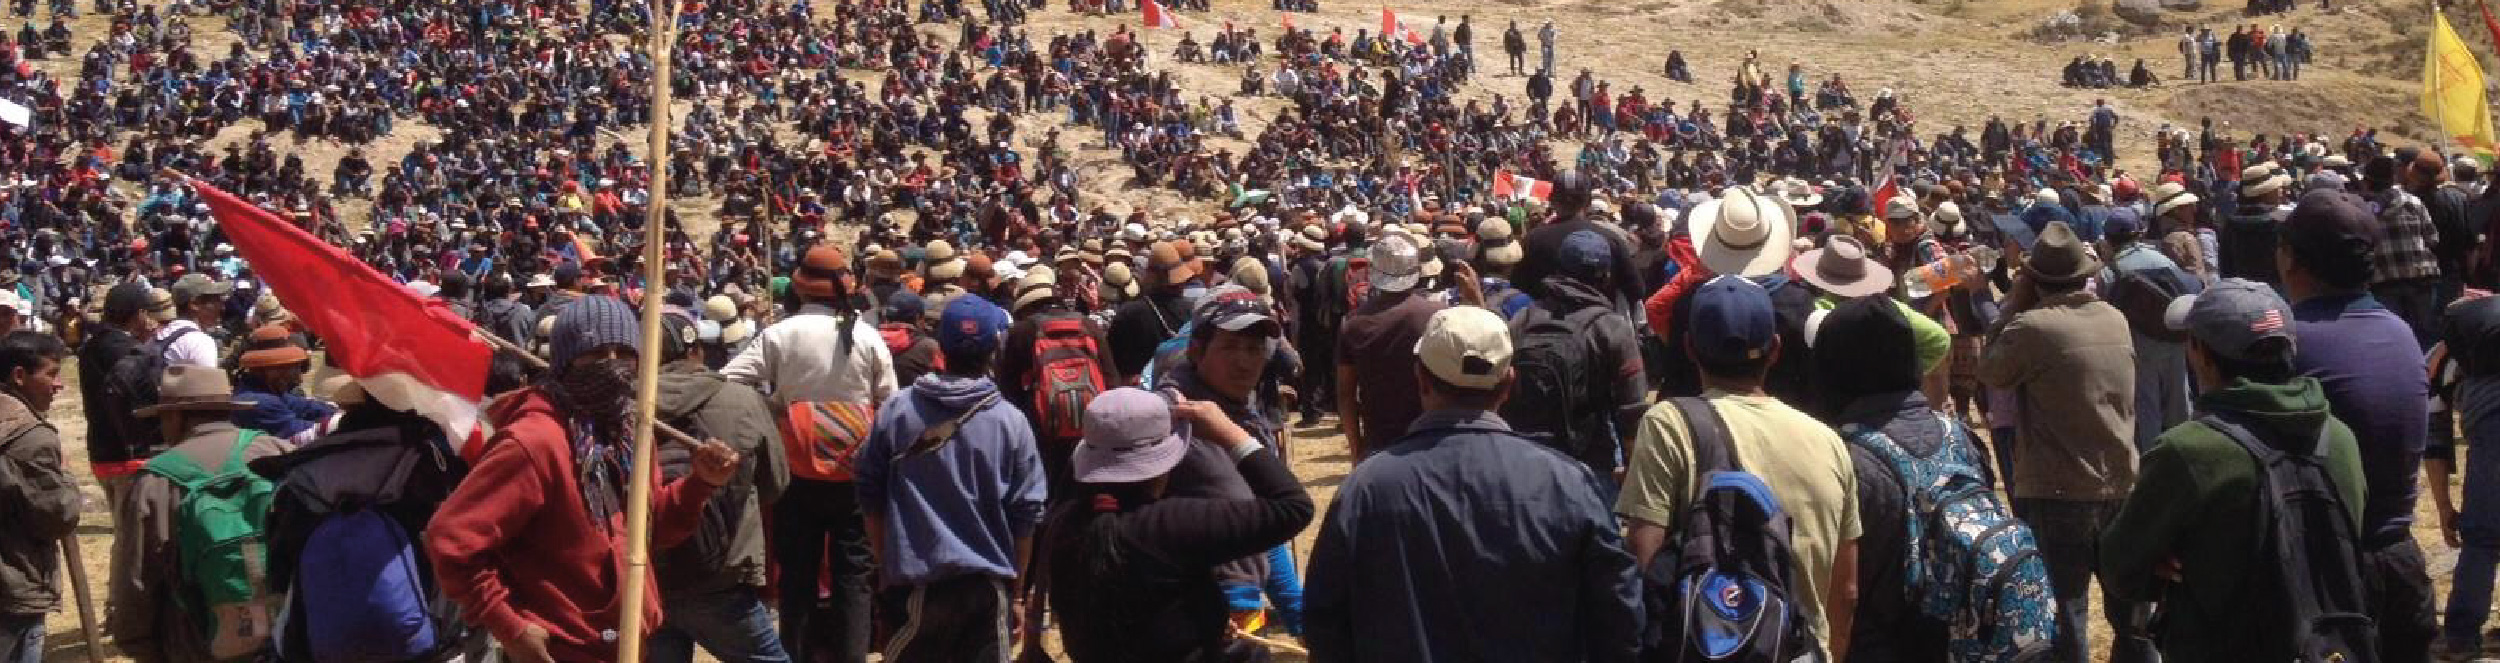 Conflictos sociales y minería: el costo detrás de las protestas, más de S/ 3,616 millones en riesgo - Instituto de Ingenieros de Minas del Perú